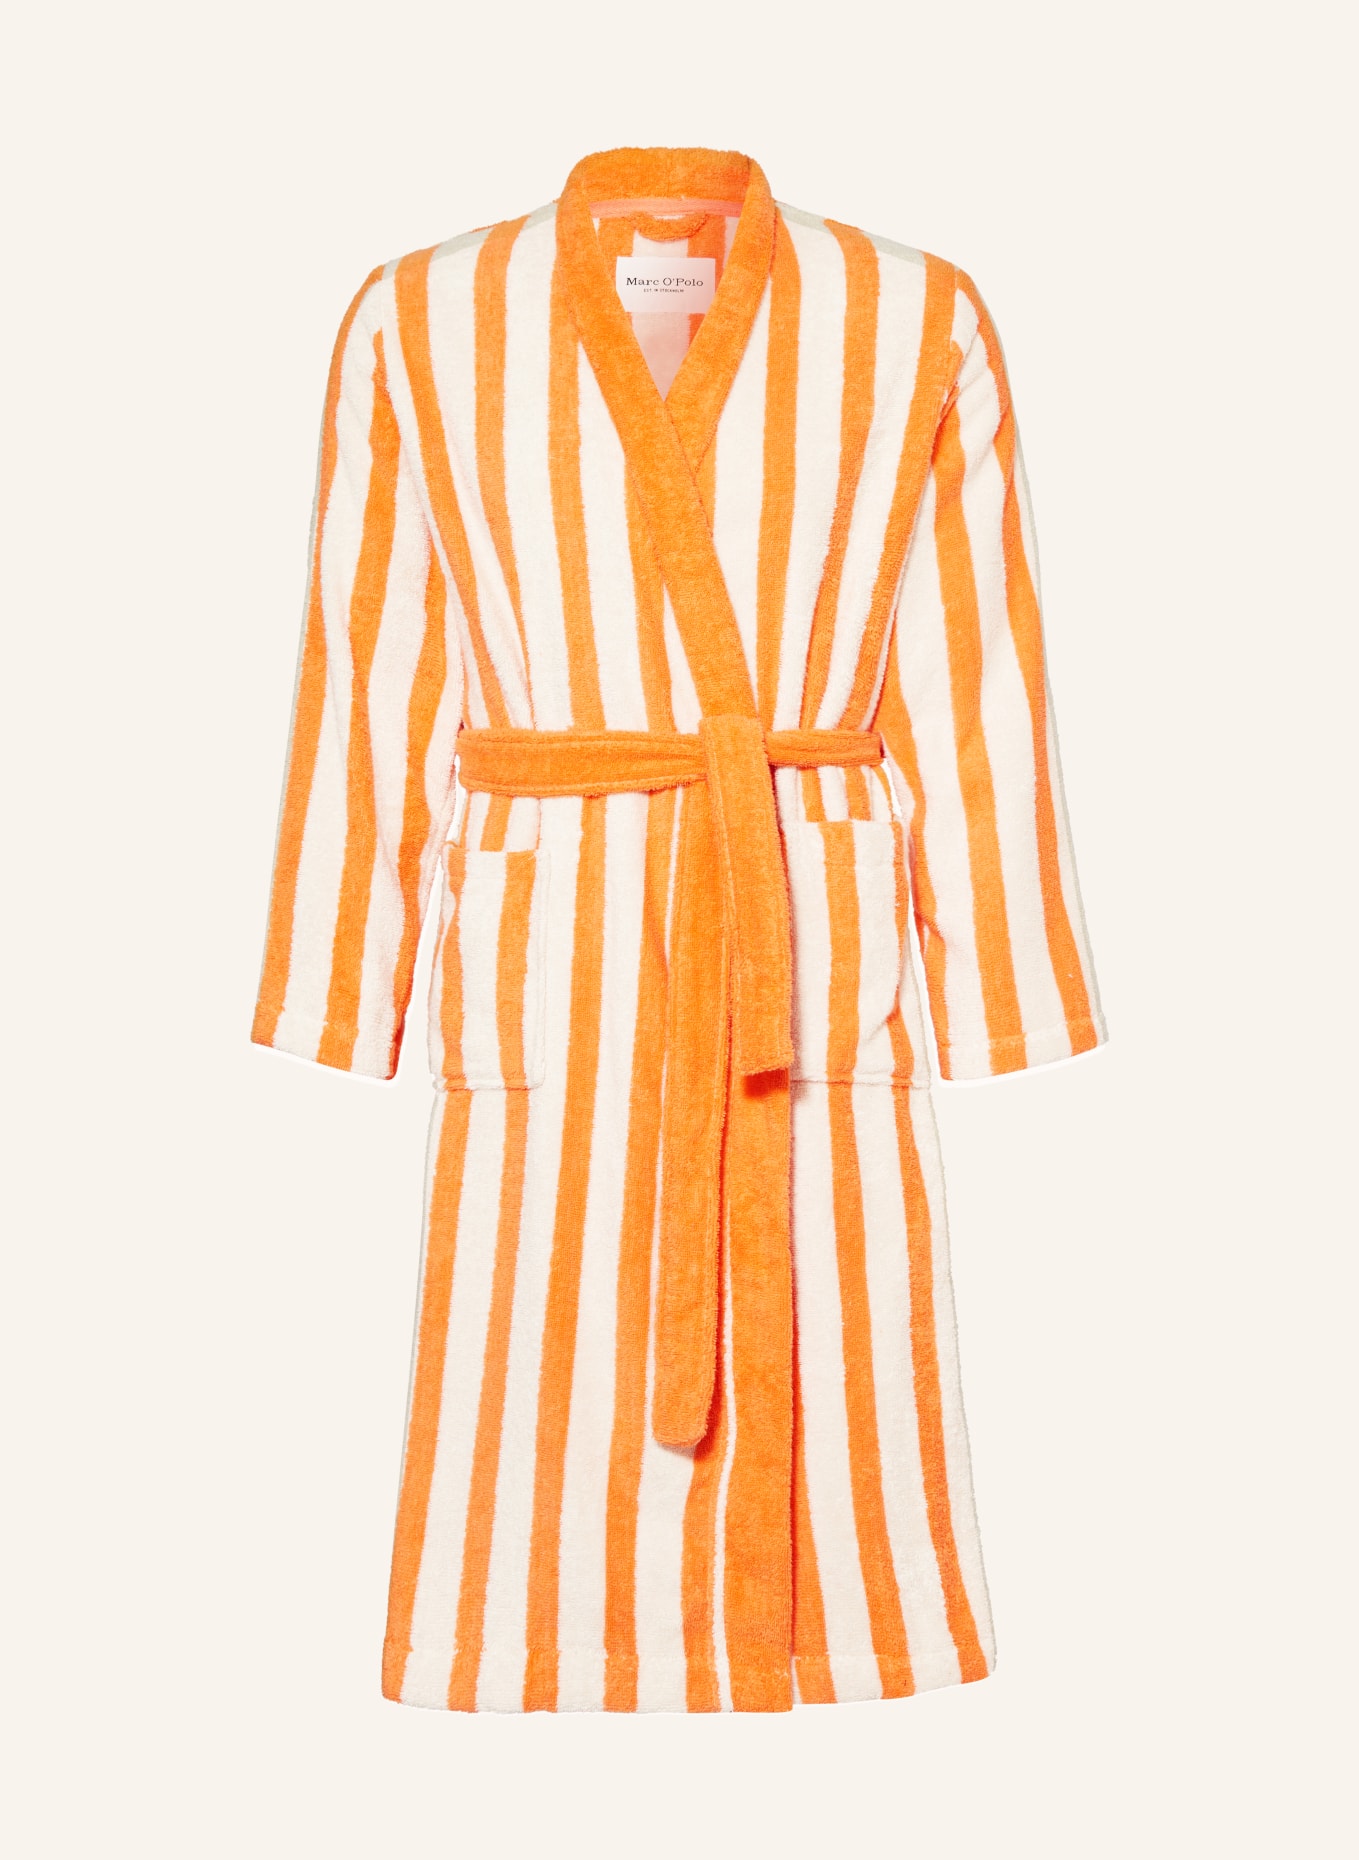 Marc O'Polo Women’s bathrobe, Color: ORANGE/ CREAM (Image 1)